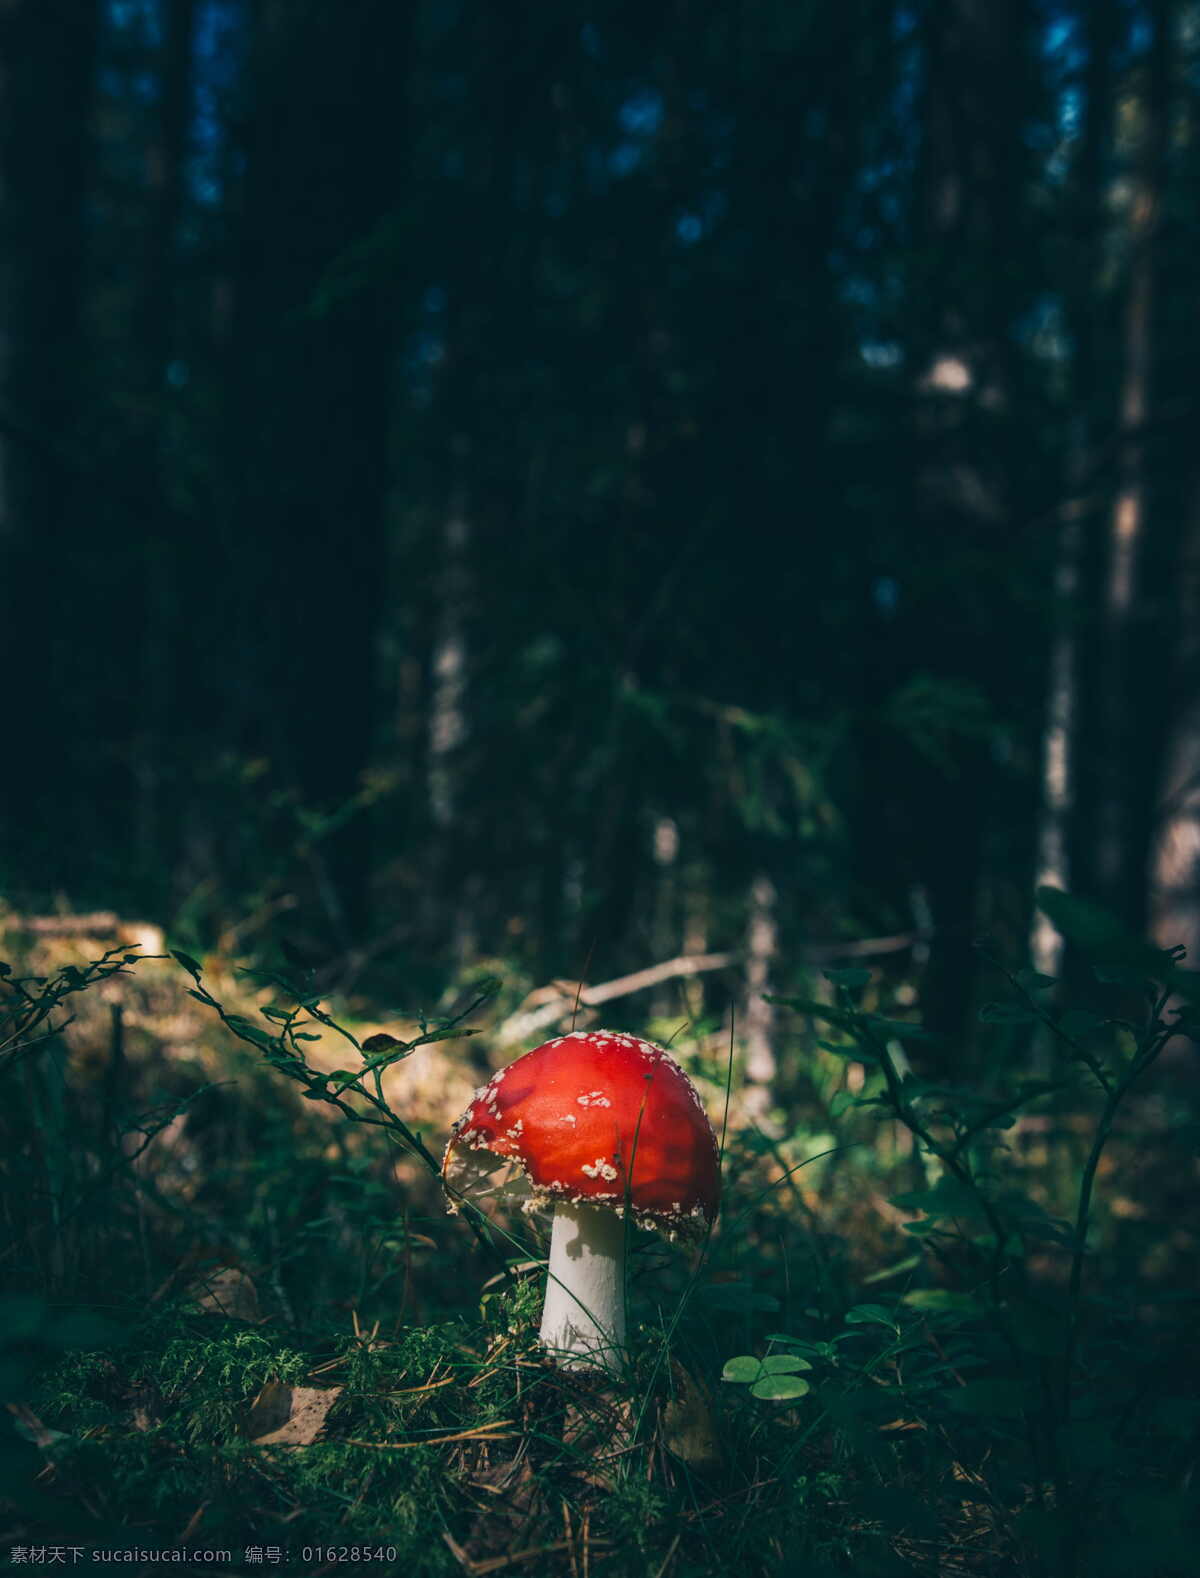 漂亮 红色 毒 蘑菇 红色的毒蘑菇 毒蘑菇 野生菌菇 菌菇 野生菌 野生蘑菇 野蘑菇 微生物 菌落 苔藓 生物世界 其他生物